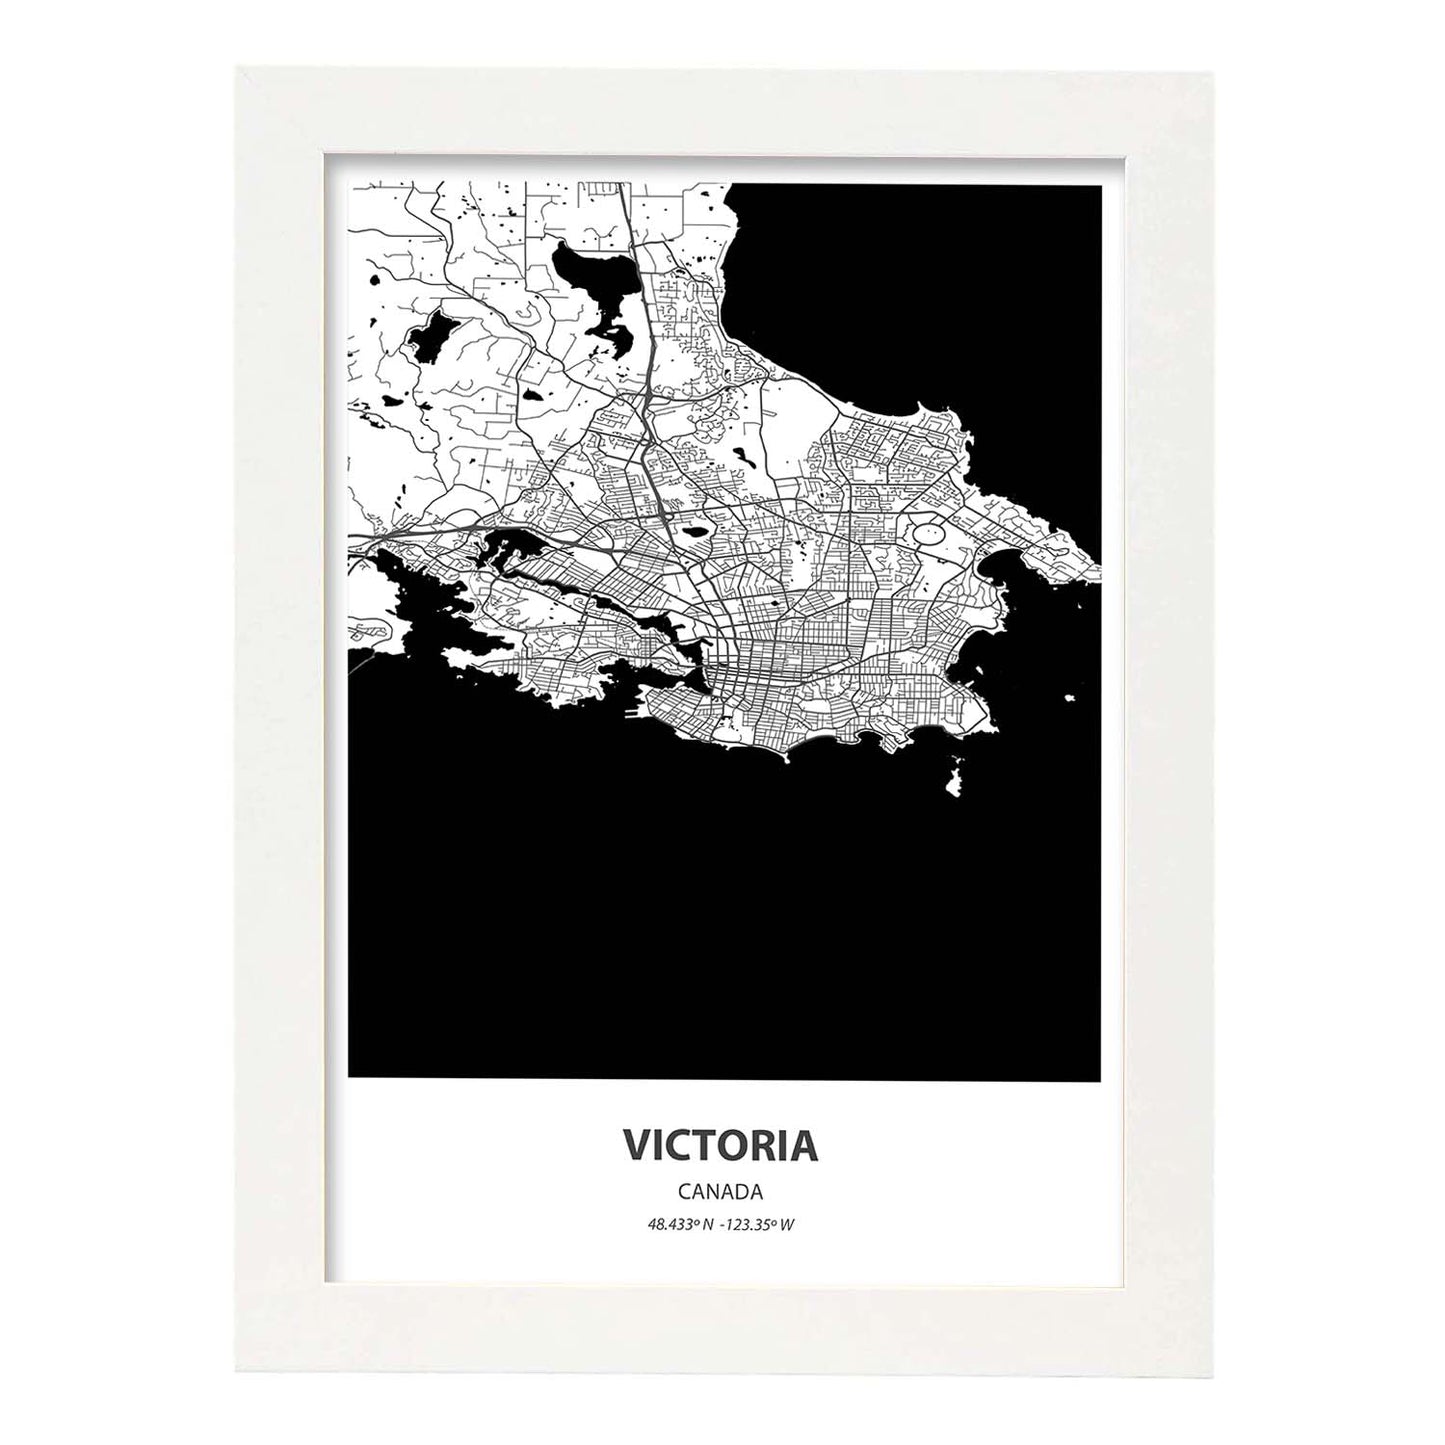 Poster con mapa de Victoria - Canada. Láminas de ciudades de Canada con mares y ríos en color negro.-Artwork-Nacnic-A4-Marco Blanco-Nacnic Estudio SL